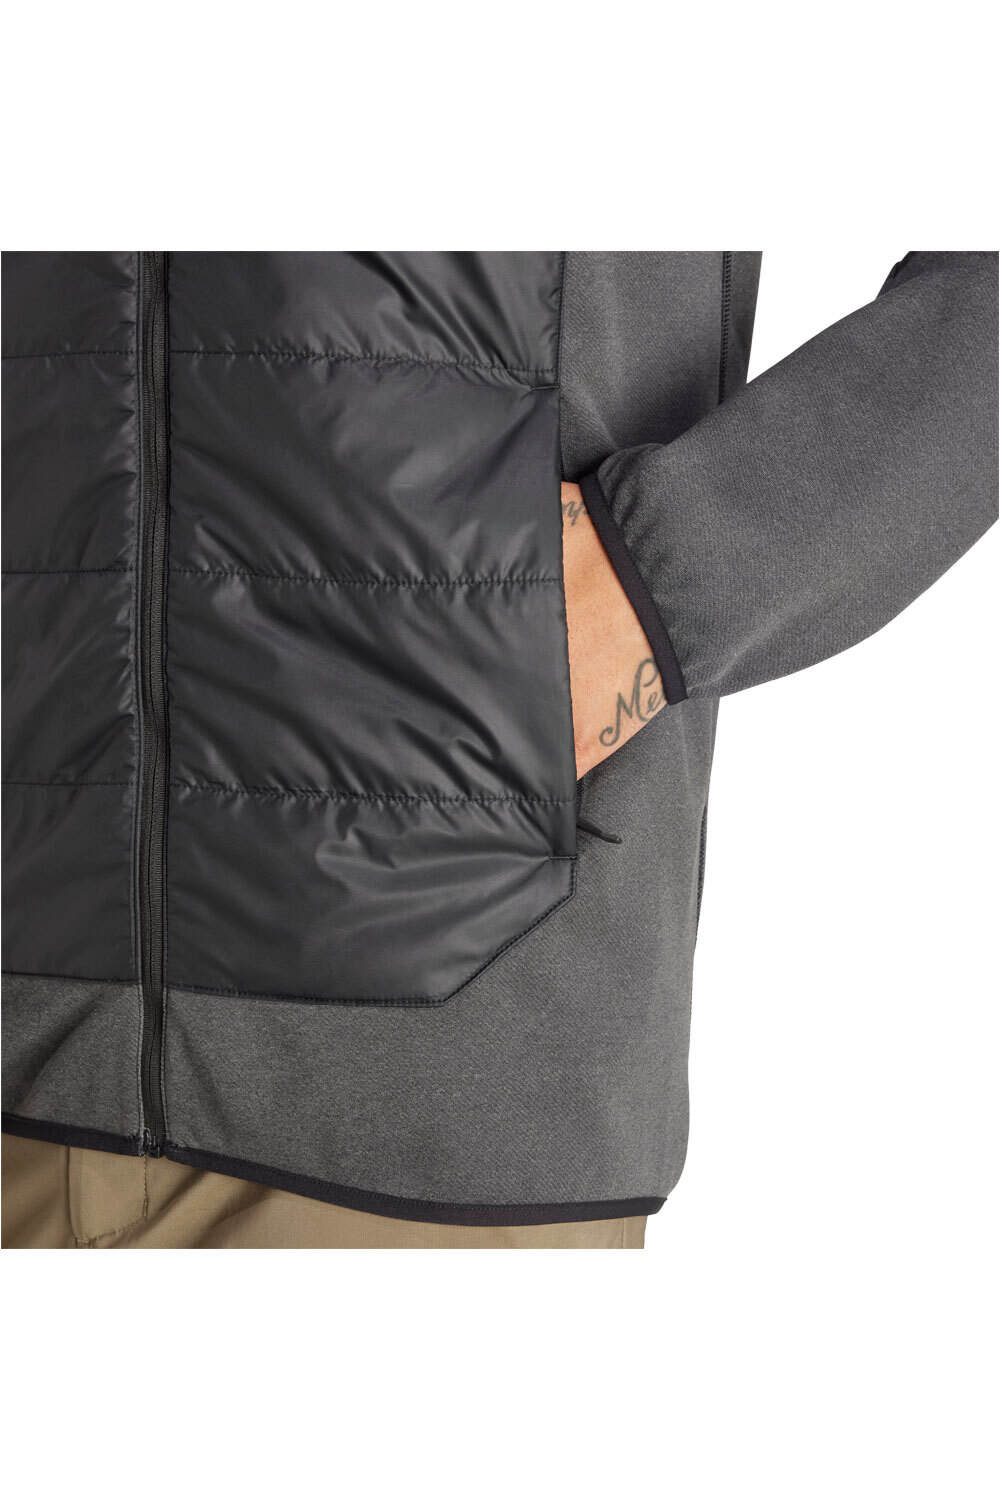 adidas chaqueta outdoor hombre MULTI HYB JKT vista detalle